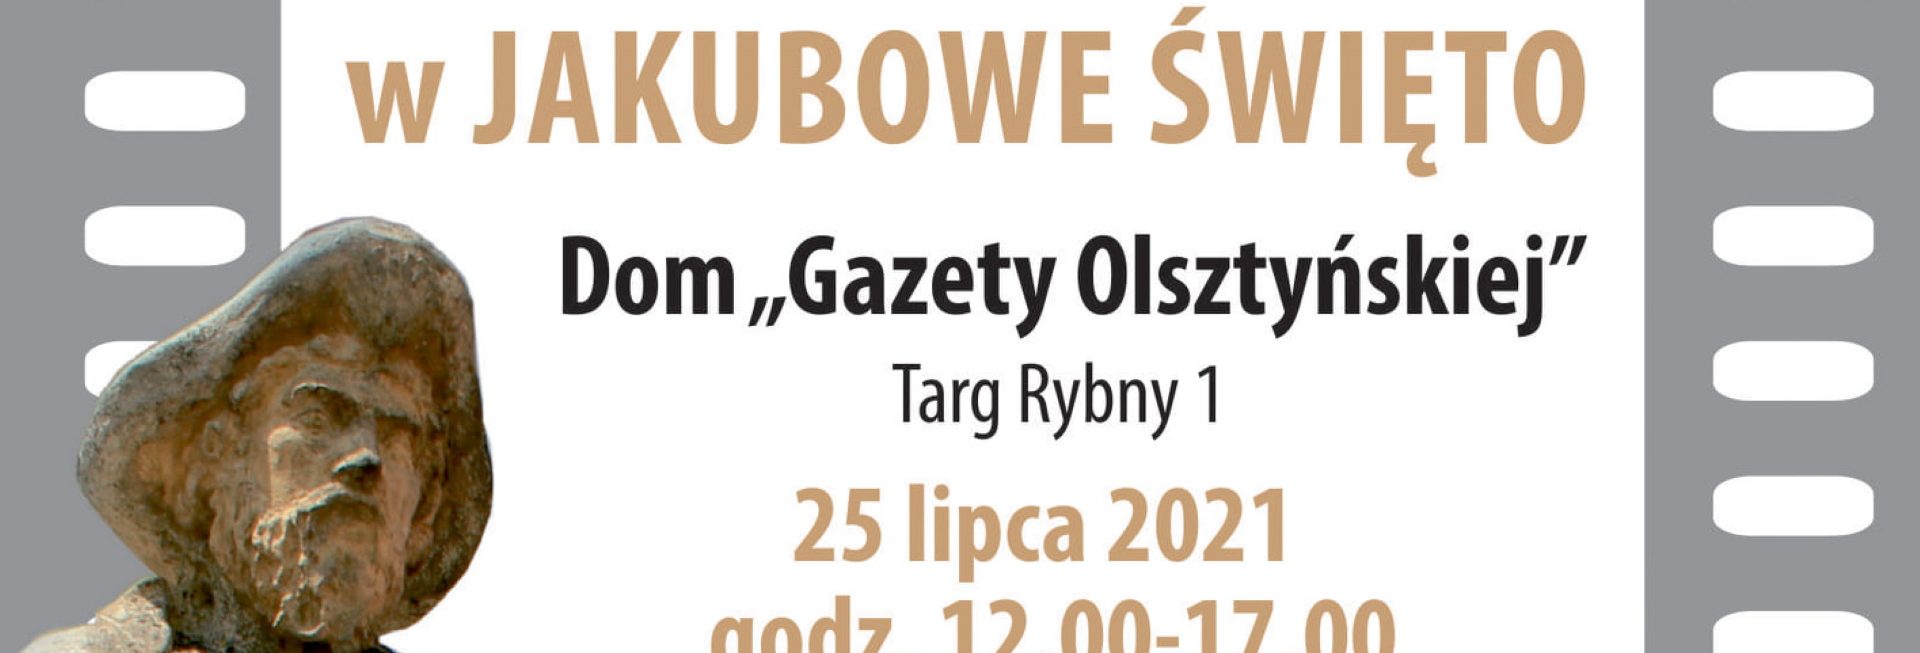 Plakat graficzny zapraszający do Olsztyna na niedzielę filmową w Jakubowe Święto - Dom „Gazety Olsztyńskiej” - Olsztyn 2021. Na plakacie napisy oraz zdjęcie posągu św. Jakuba.   